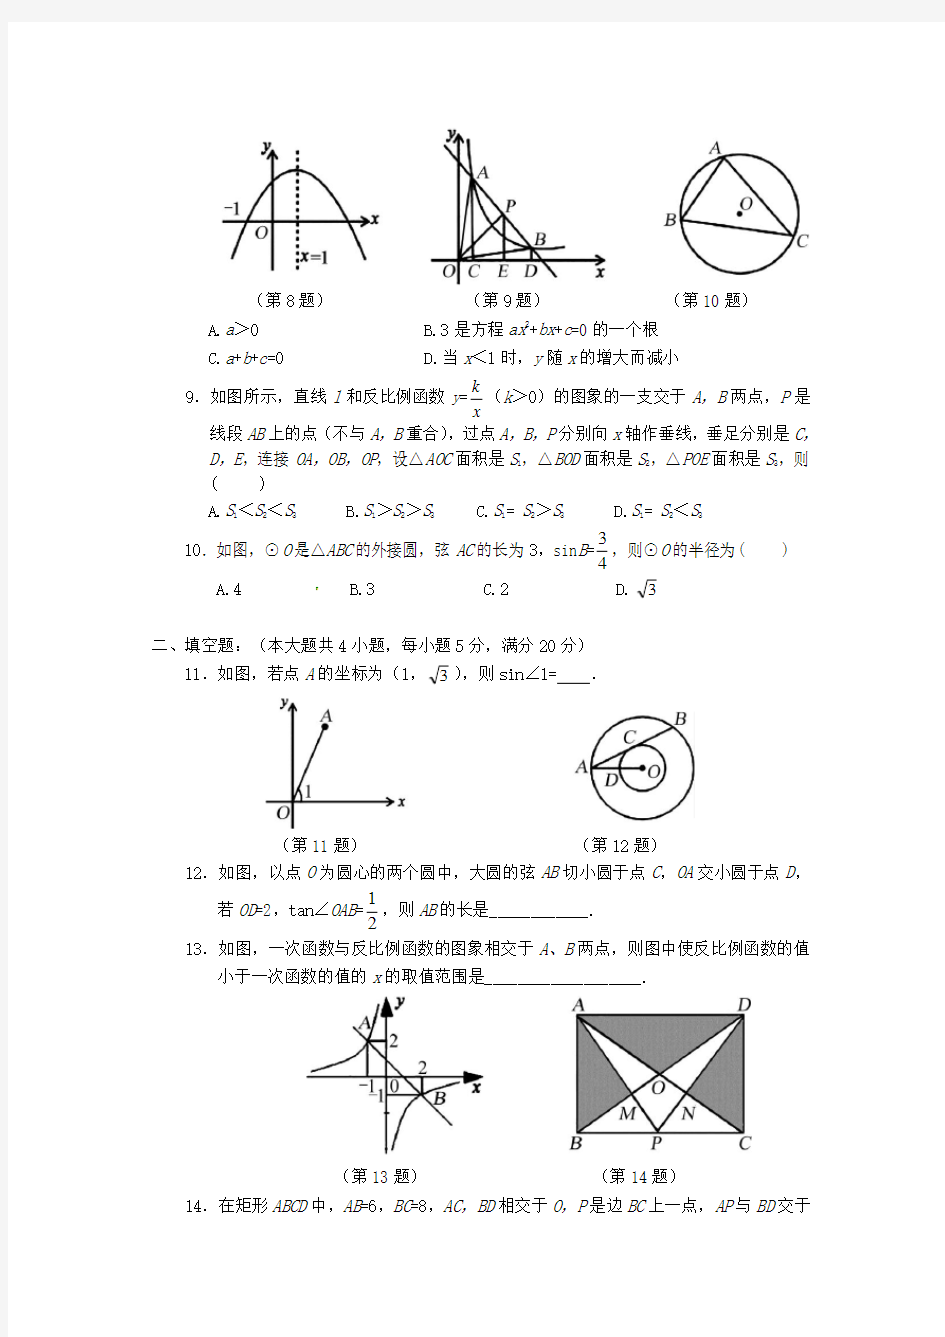 2020年安徽省数学中考模拟试题(含答案)